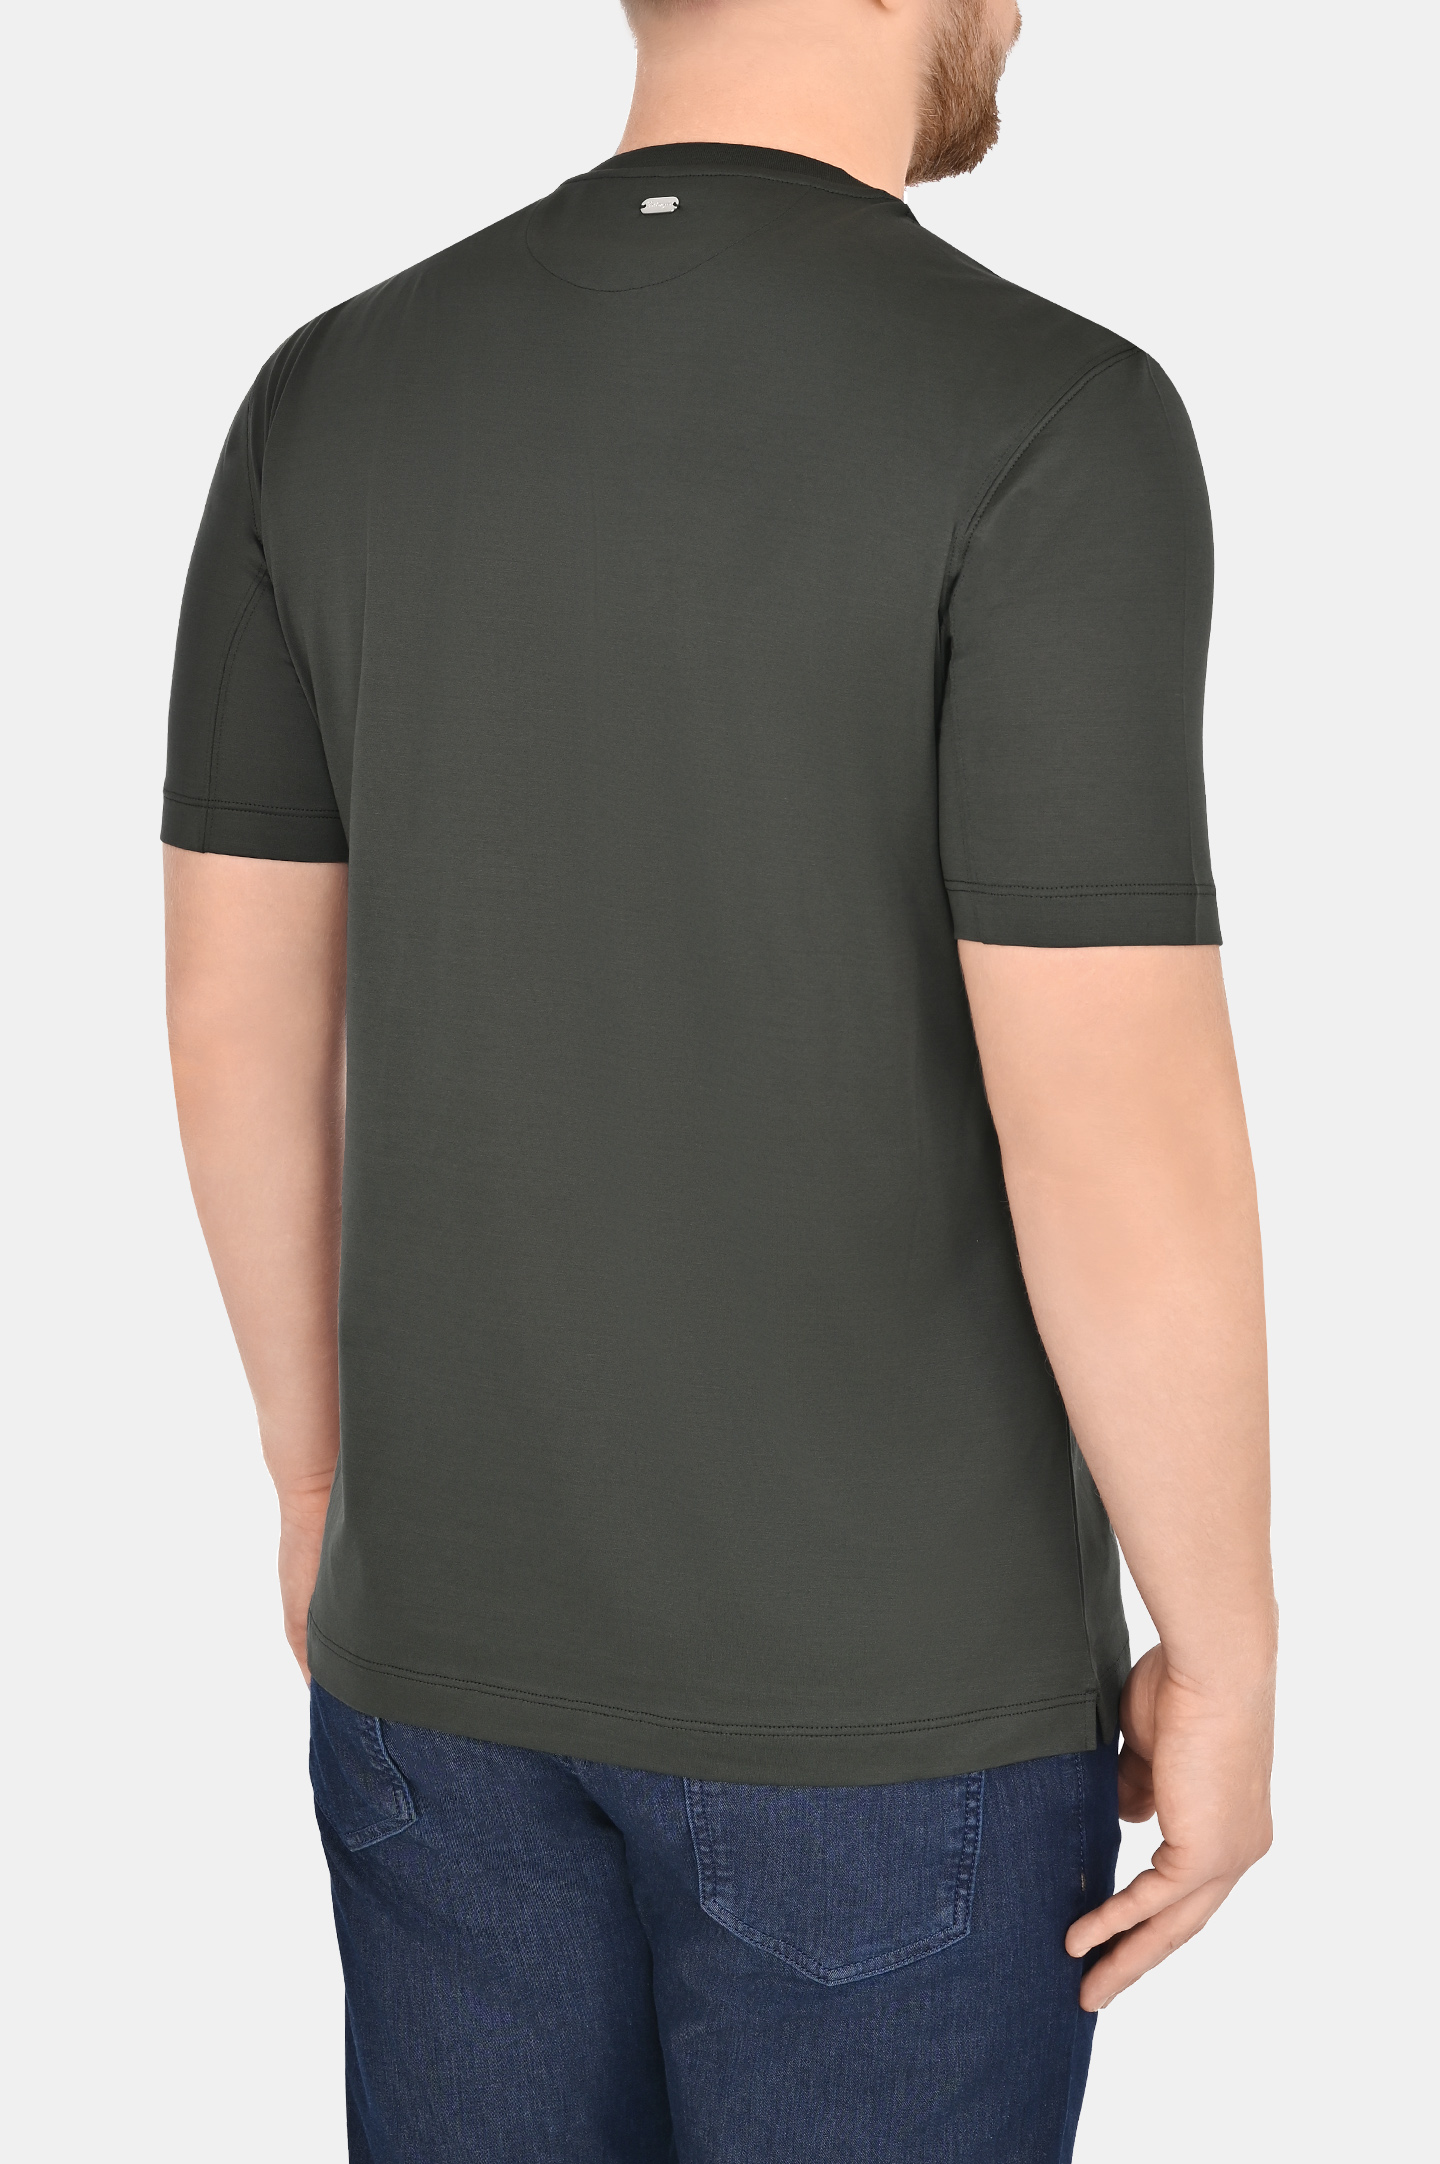 Базовая хлопковая футболка CASTANGIA DM66, цвет: Темно-зеленый, Мужской